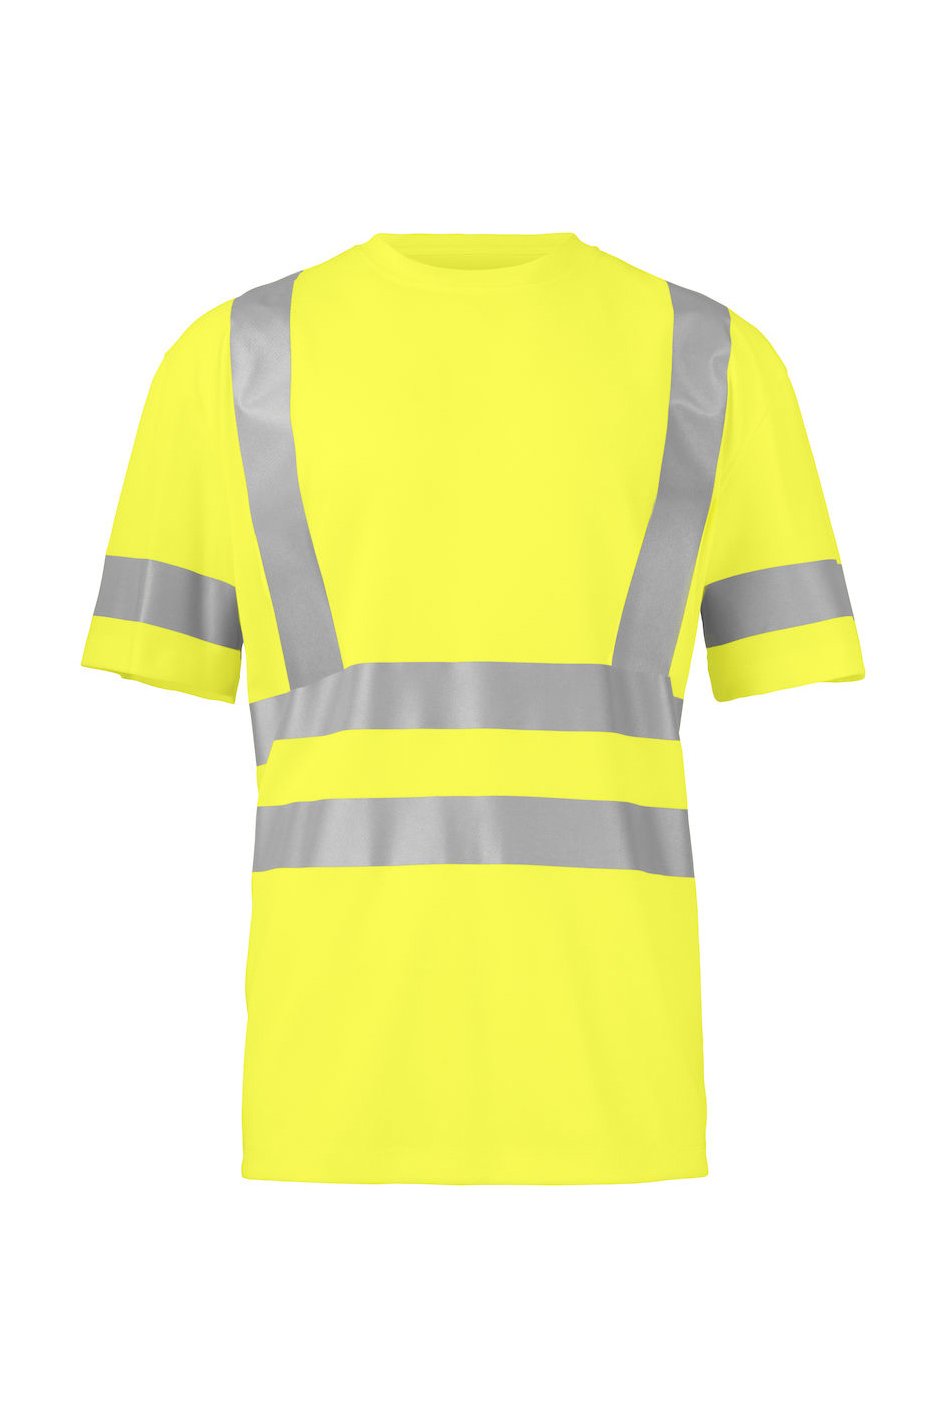 T-Shirt EN ISO 20471 Klasse 2/3, gelb